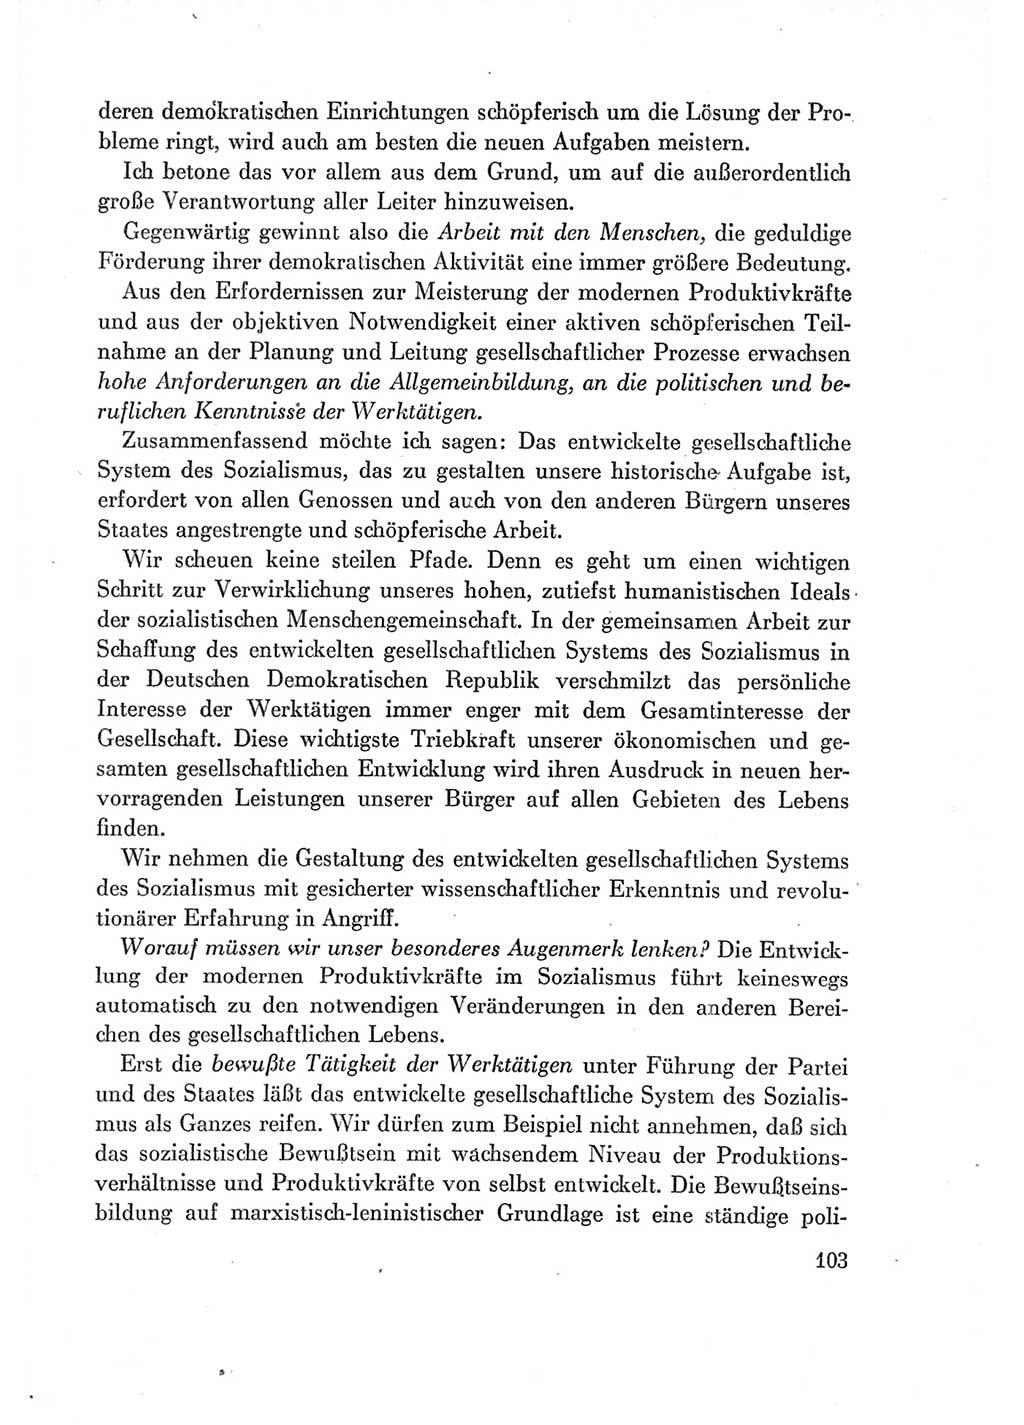 Protokoll der Verhandlungen des Ⅶ. Parteitages der Sozialistischen Einheitspartei Deutschlands (SED) [Deutsche Demokratische Republik (DDR)] 1967, Band Ⅰ, Seite 103 (Prot. Verh. Ⅶ. PT SED DDR 1967, Bd. Ⅰ, S. 103)